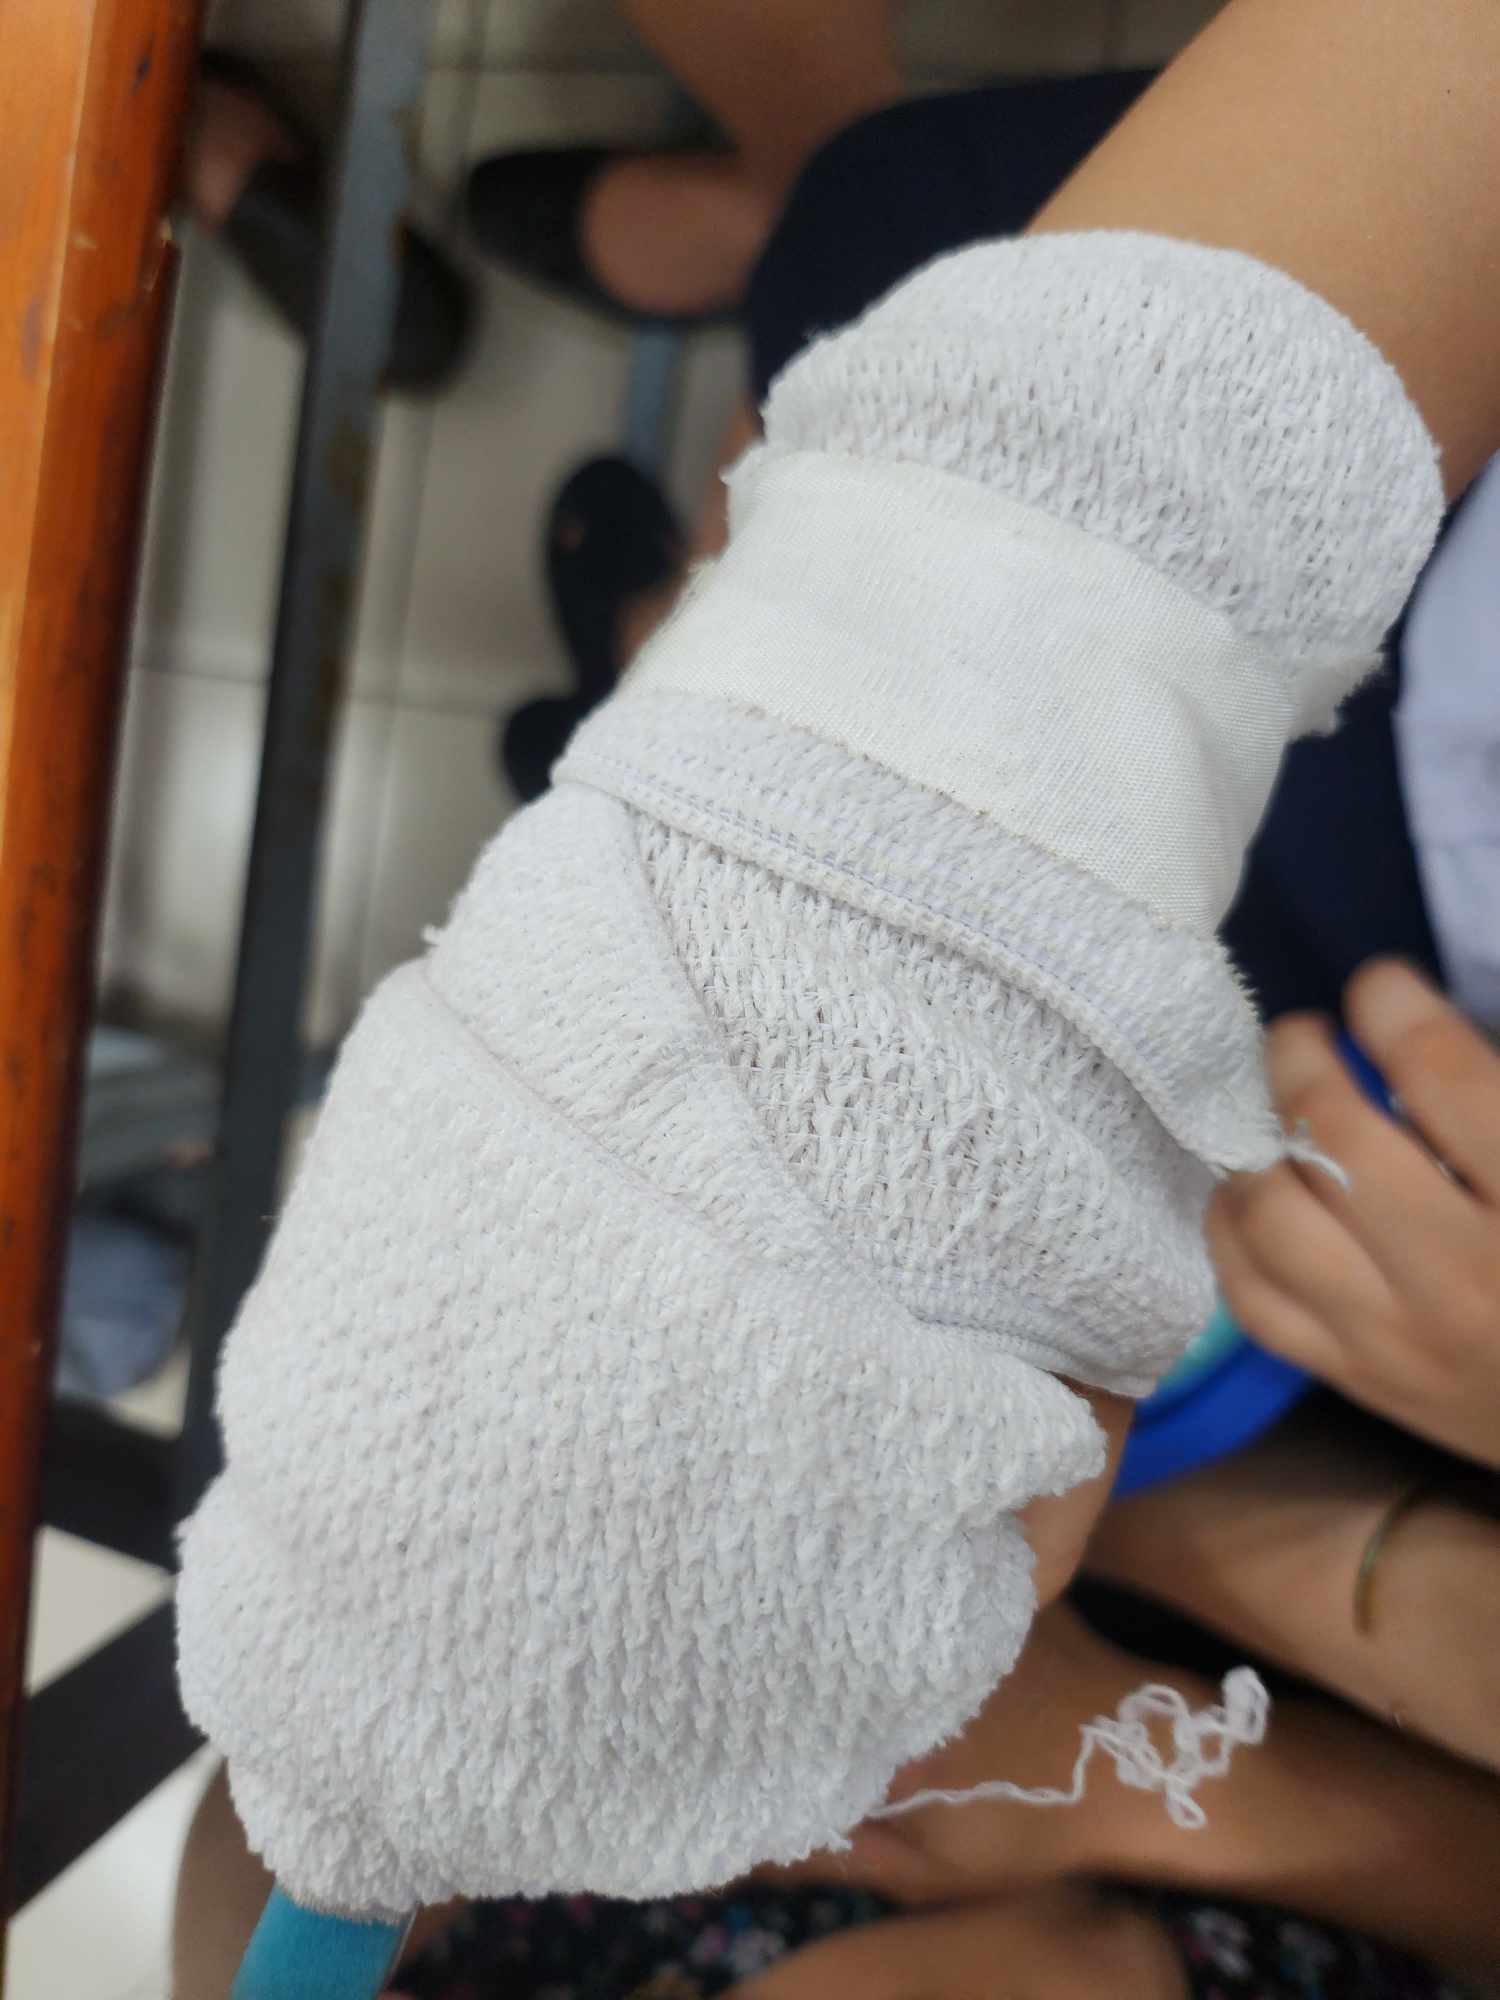 Trường Tiểu học Nguyễn Văn Trỗi lên tiếng việc giáo viên đánh gãy xương ngón tay học sinh